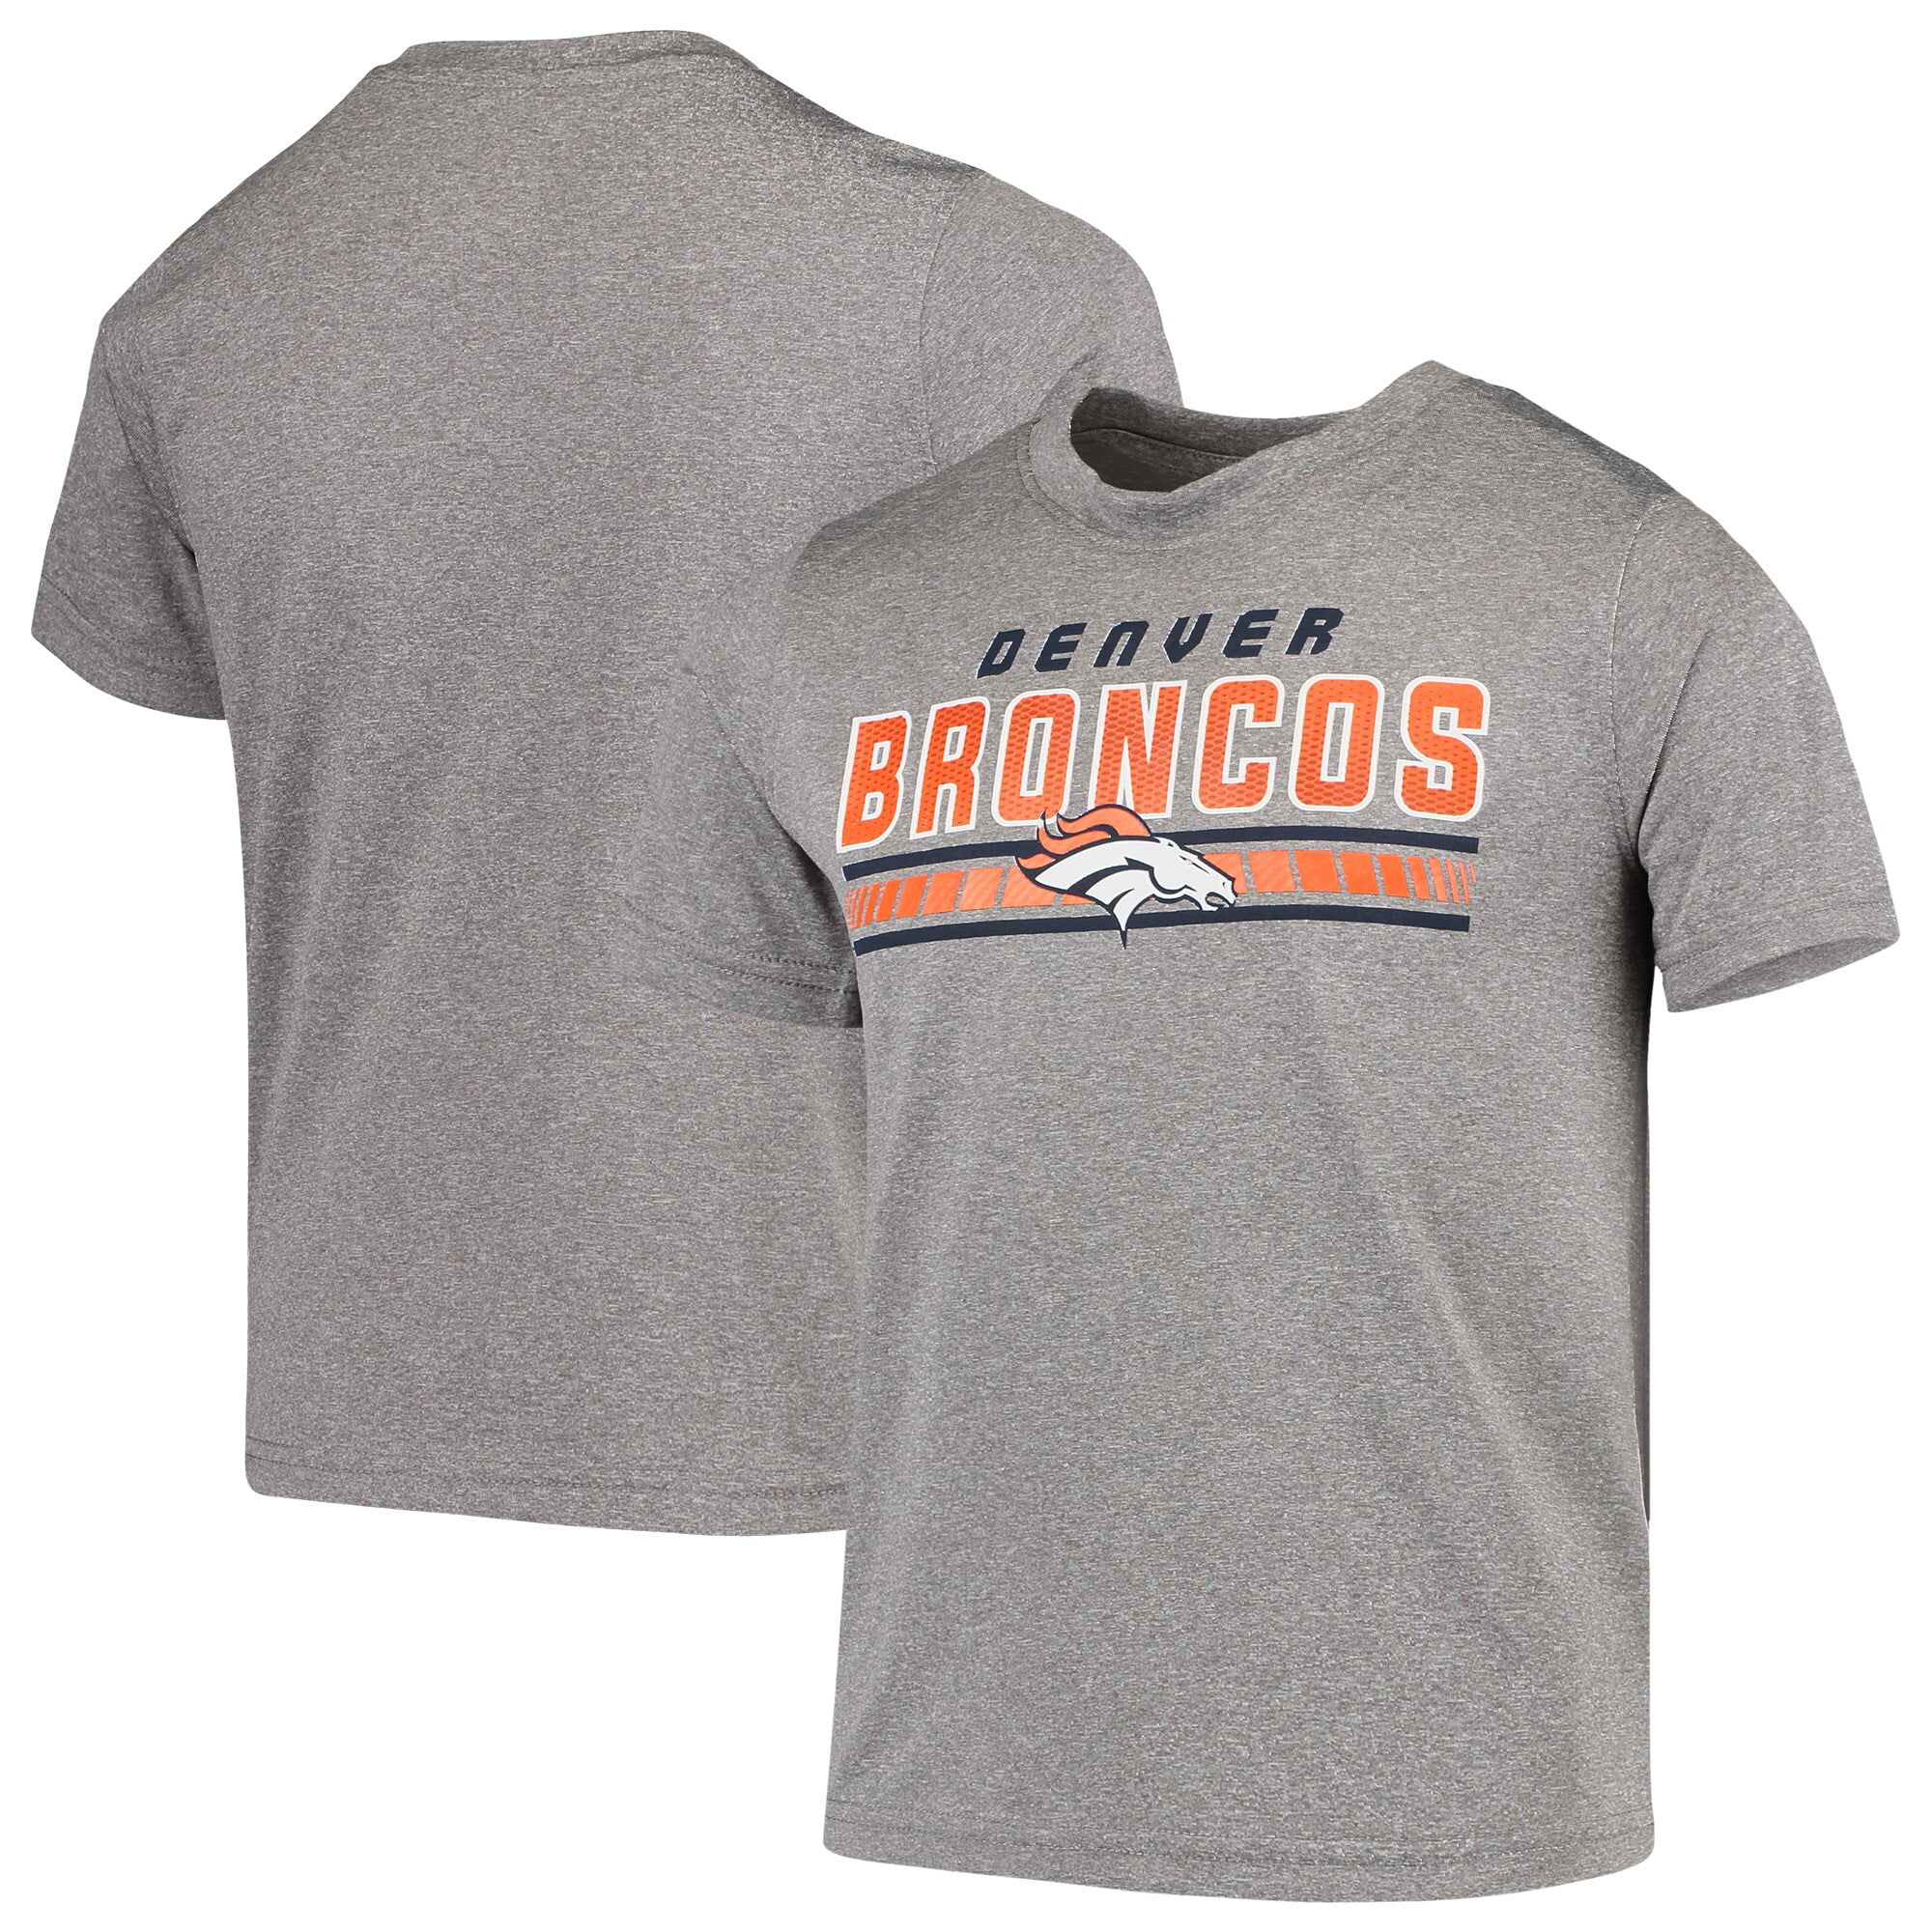 Youth Gray Denver Broncos Wordmark Logo T-Shirt - Walmart.com - Walmart.com